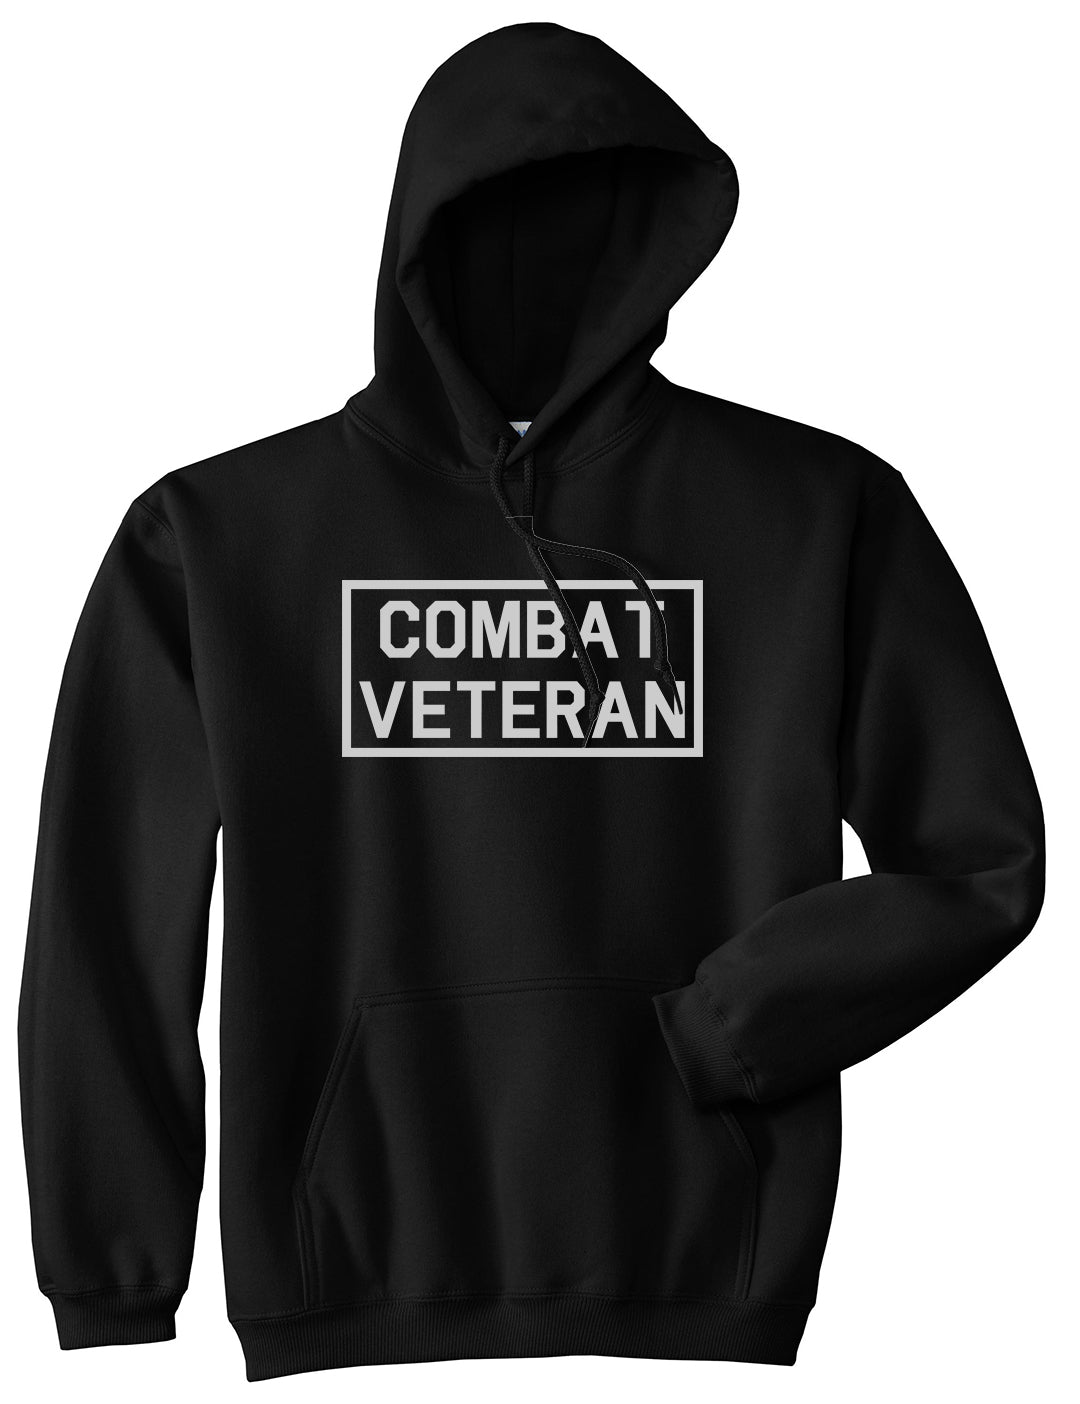 Combat Veteran Black Pullover Hoodie by Kings Of NY